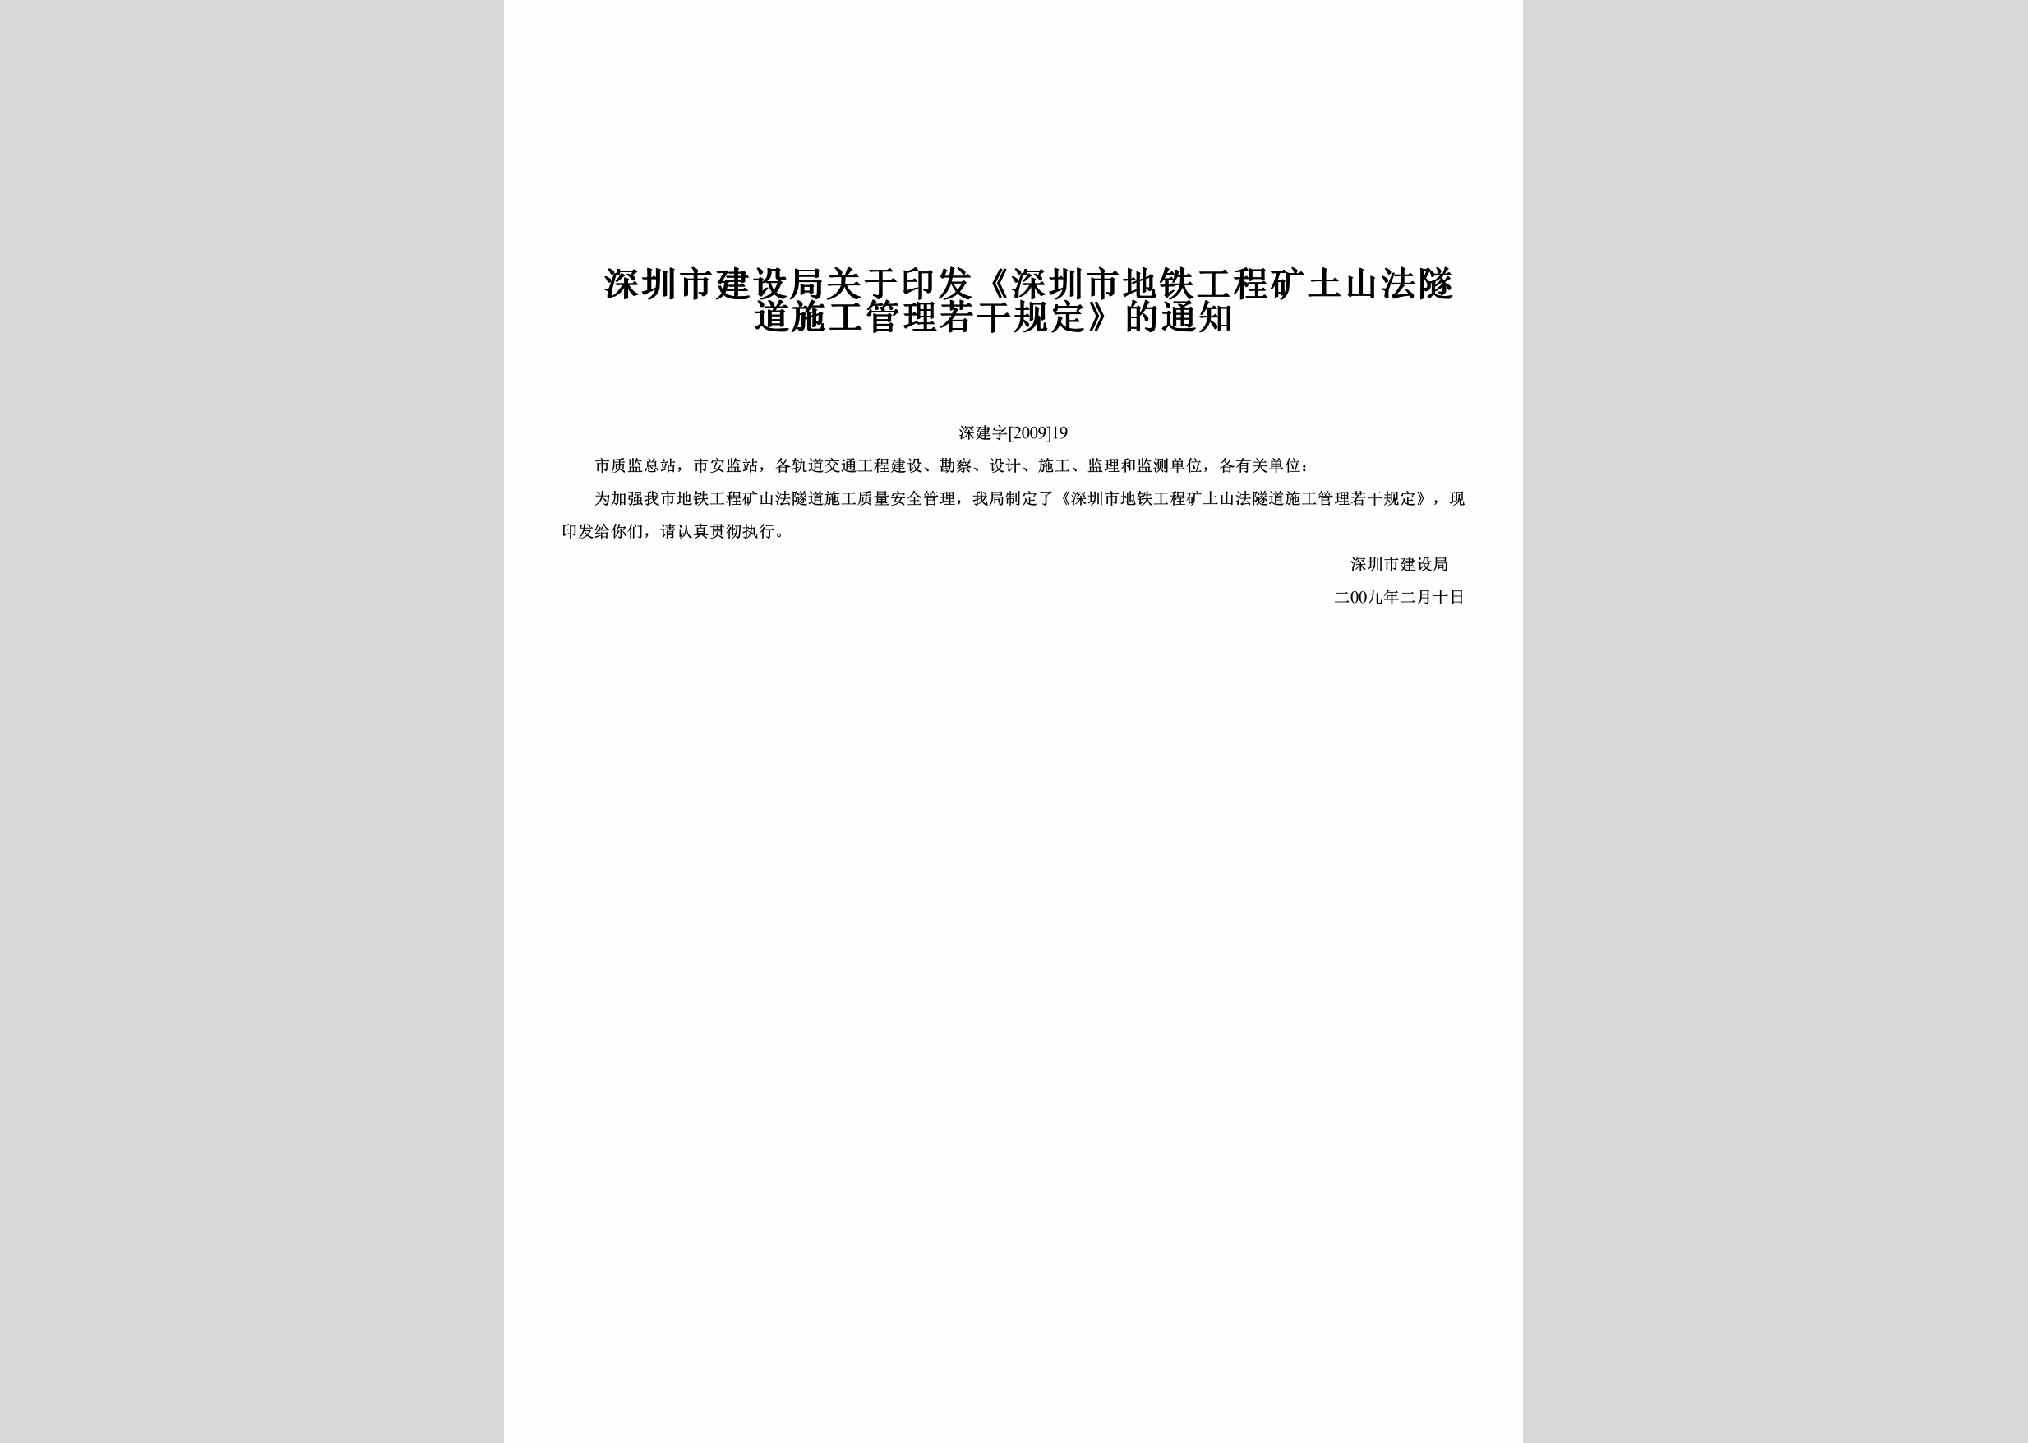 深建字[2009]19：关于印发《深圳市地铁工程矿土山法隧道施工管理若干规定》的通知